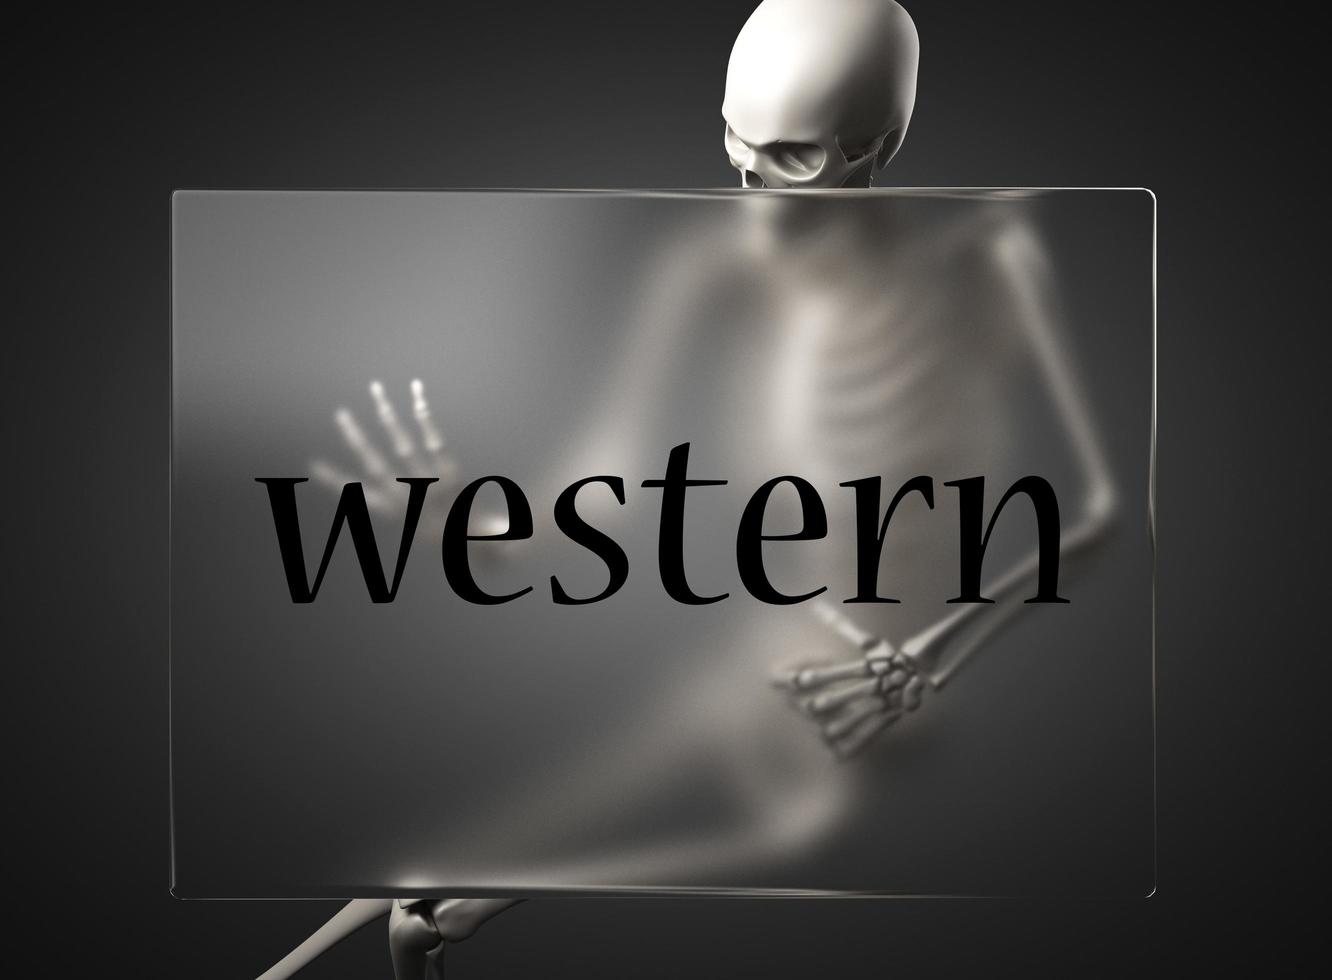 palavra ocidental em vidro e esqueleto foto